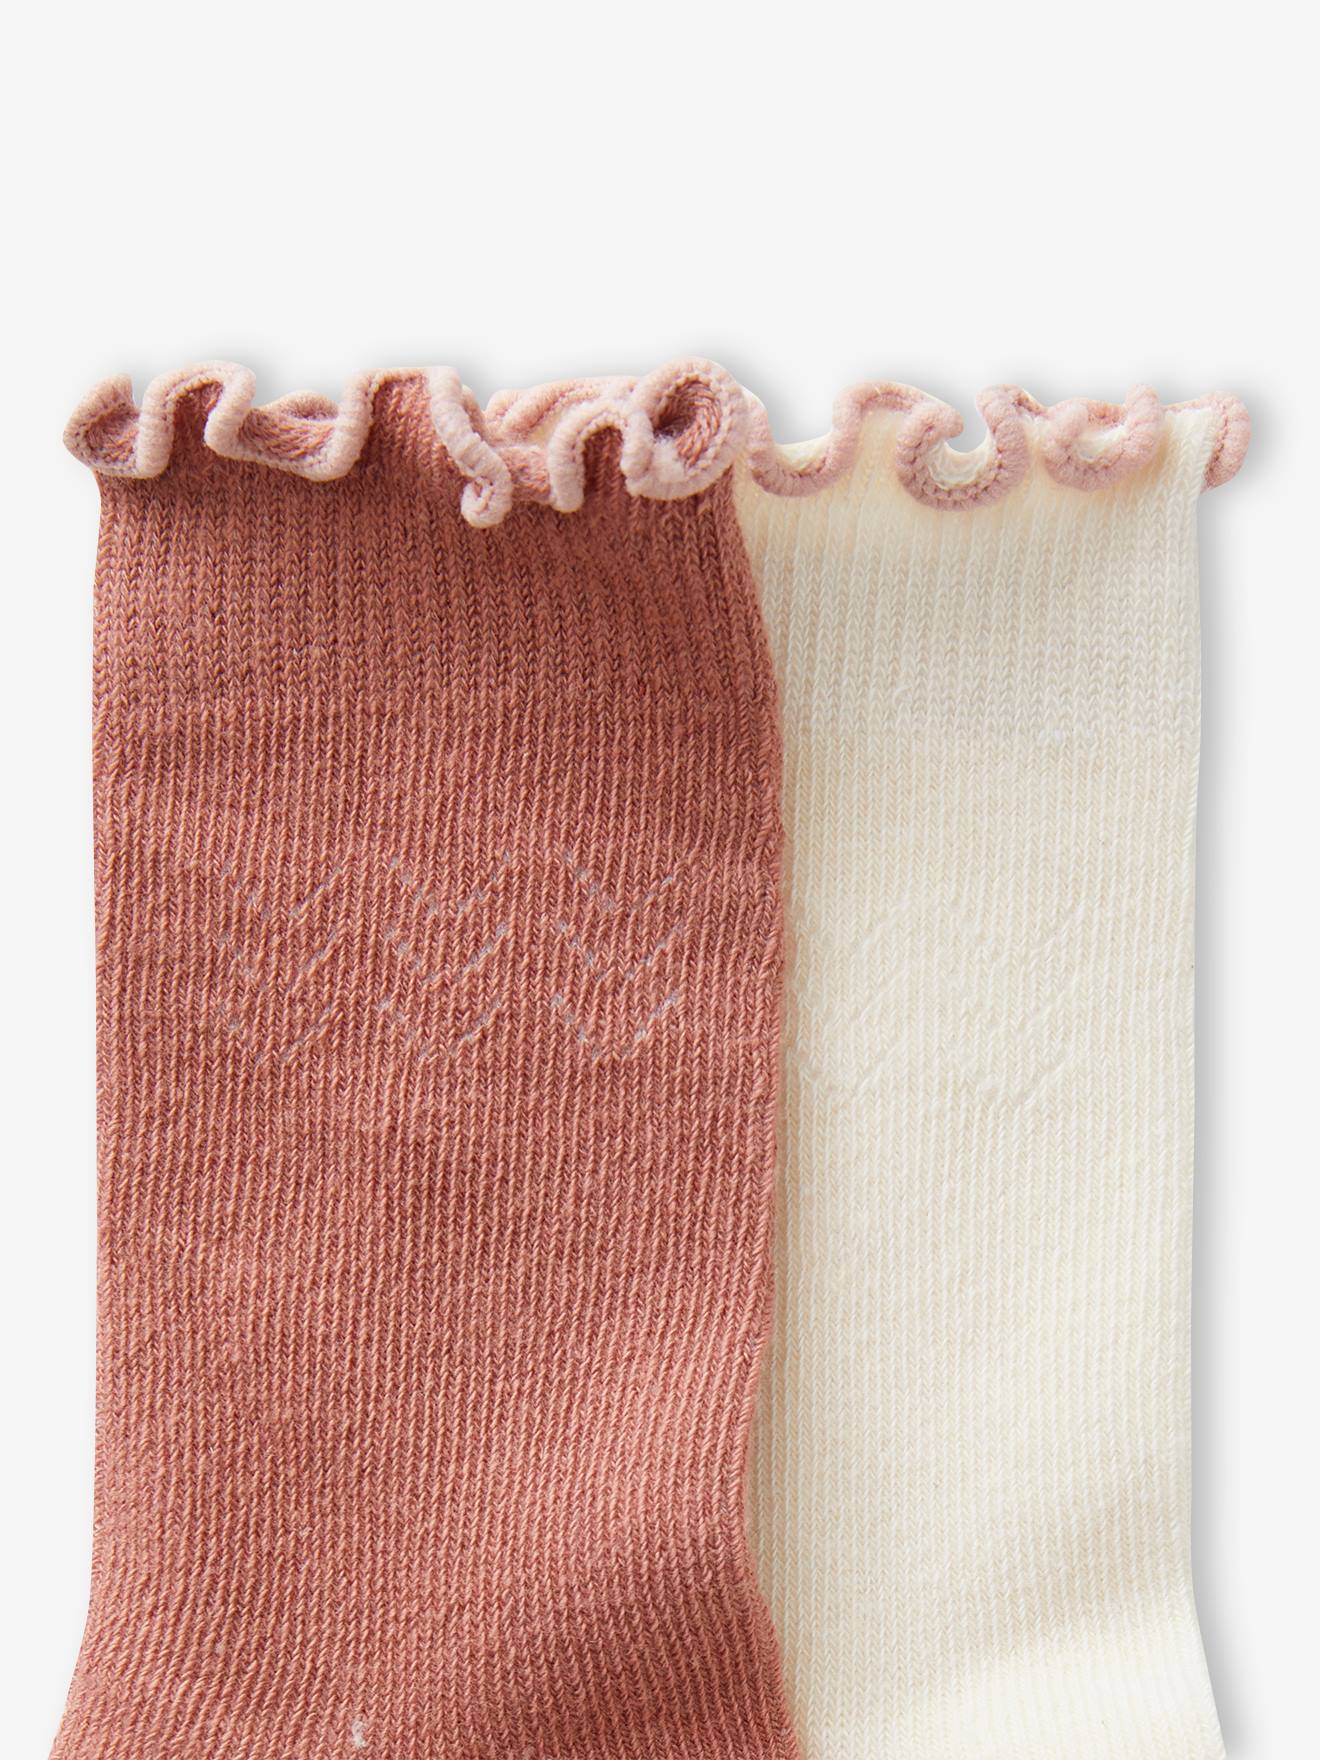 https://media.vertbaudet.com/Pictures/vertbaudet/280375/pack-of-2-pairs-of-high-socks-in-openwork-for-baby-girls.jpg